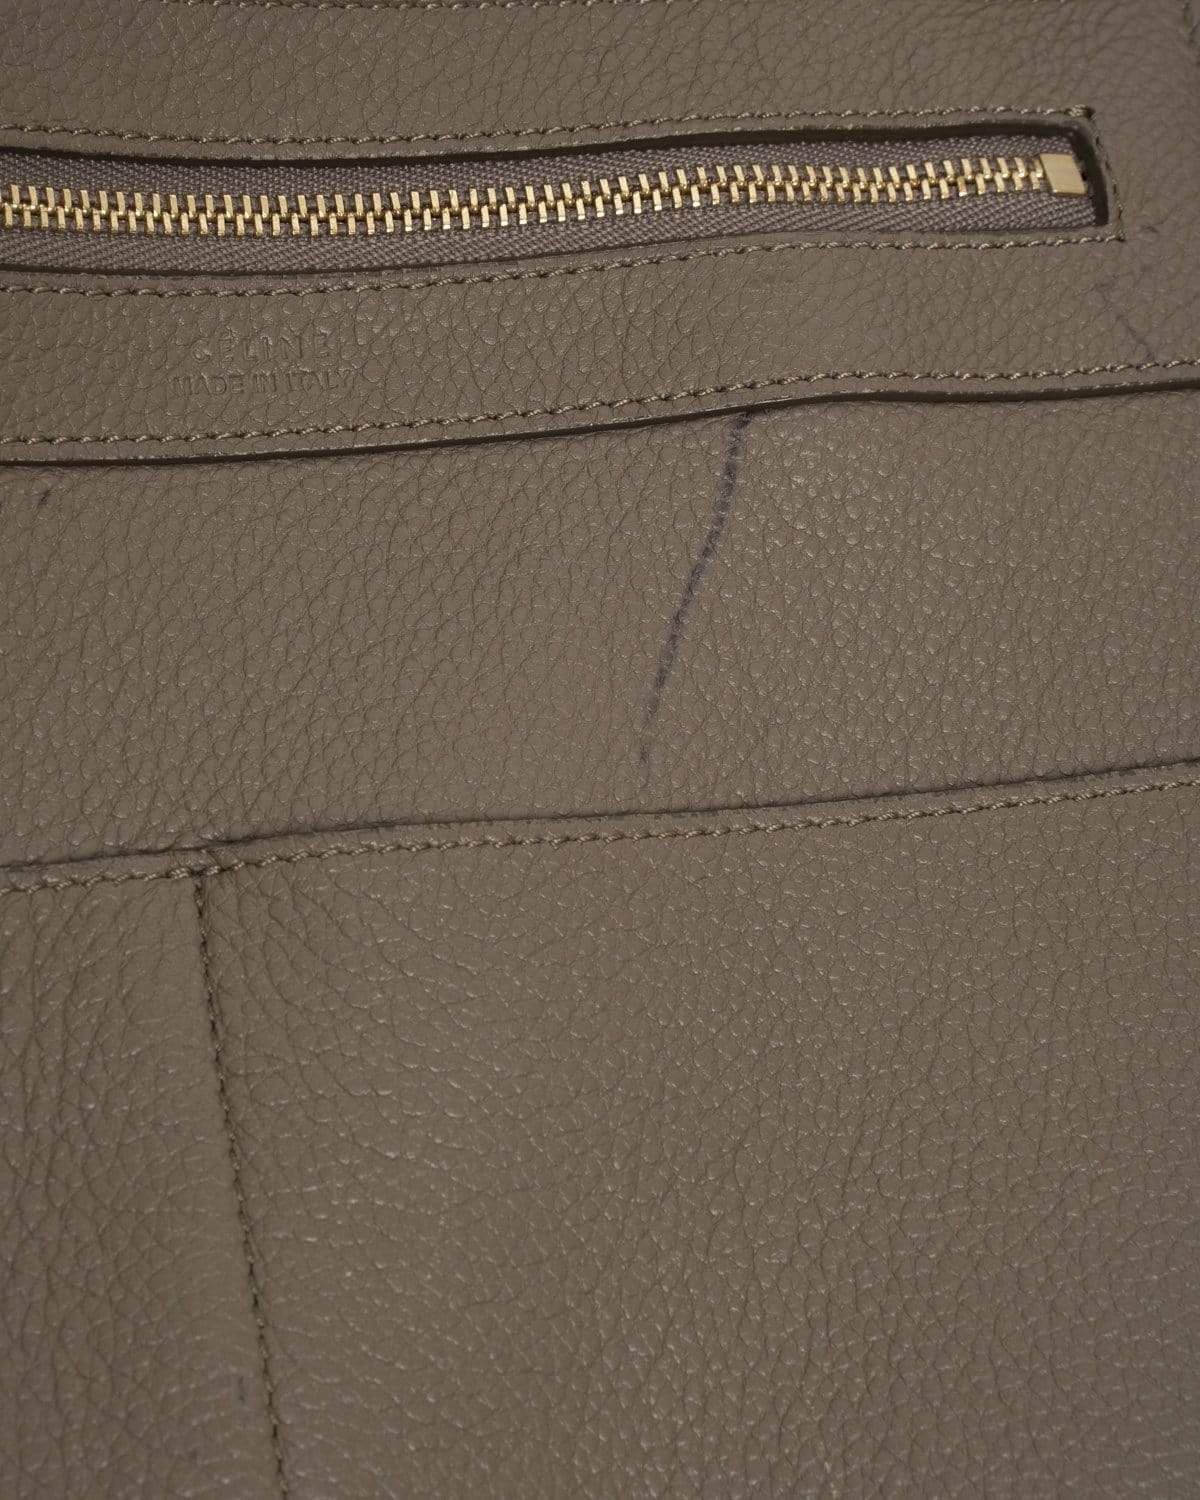 Celine Celine Grey Soft Leather Cabas Phanton Large Tote Bag - AGL1474